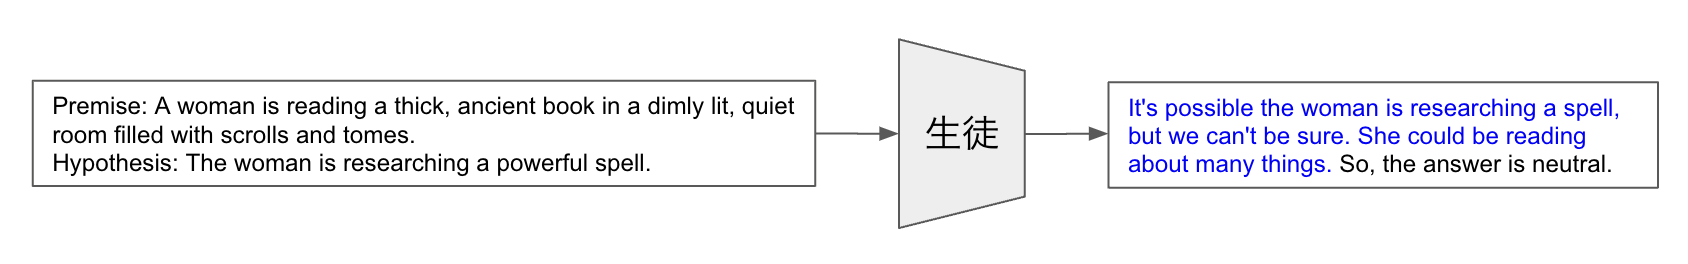 図4: 推論過程とラベルをまとめて生成するシングルタスク